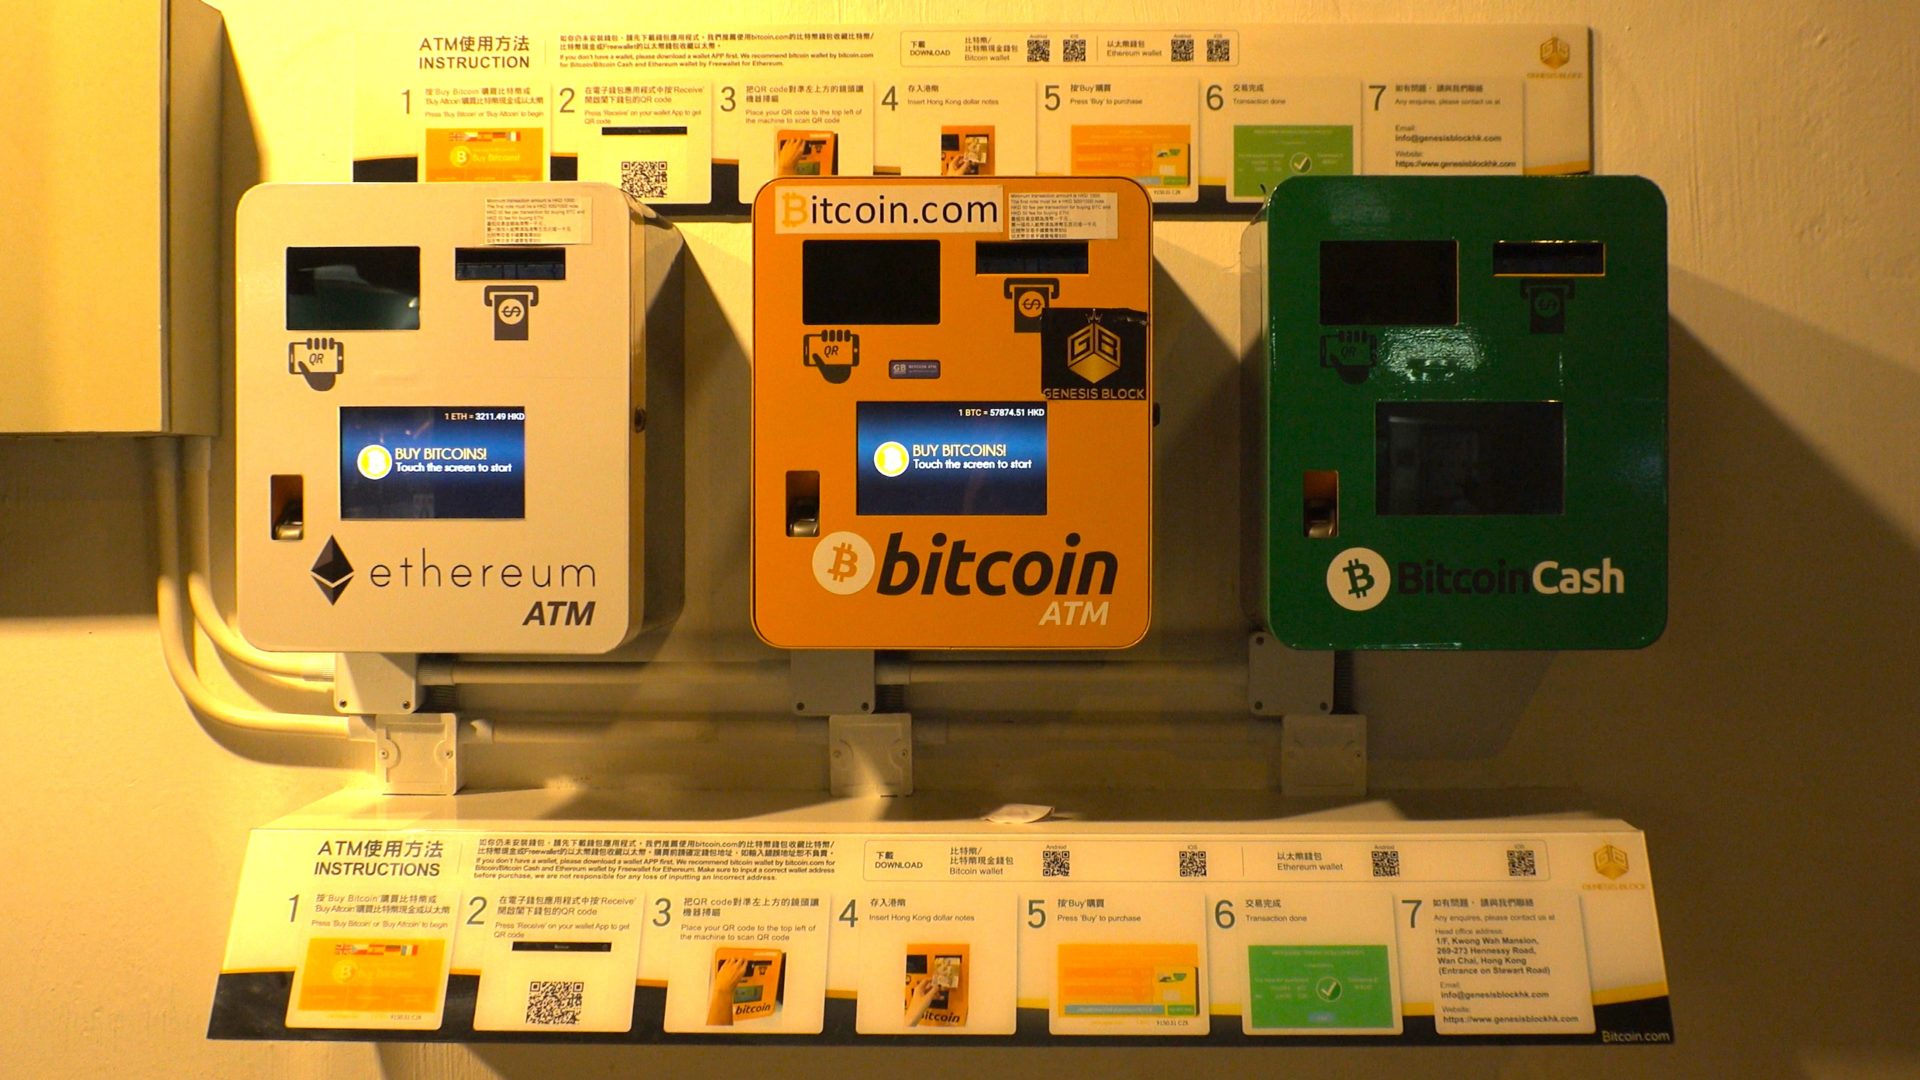 ATM Bancomat Bitcoin in Italia: come funziona e come prelevare [mappa]